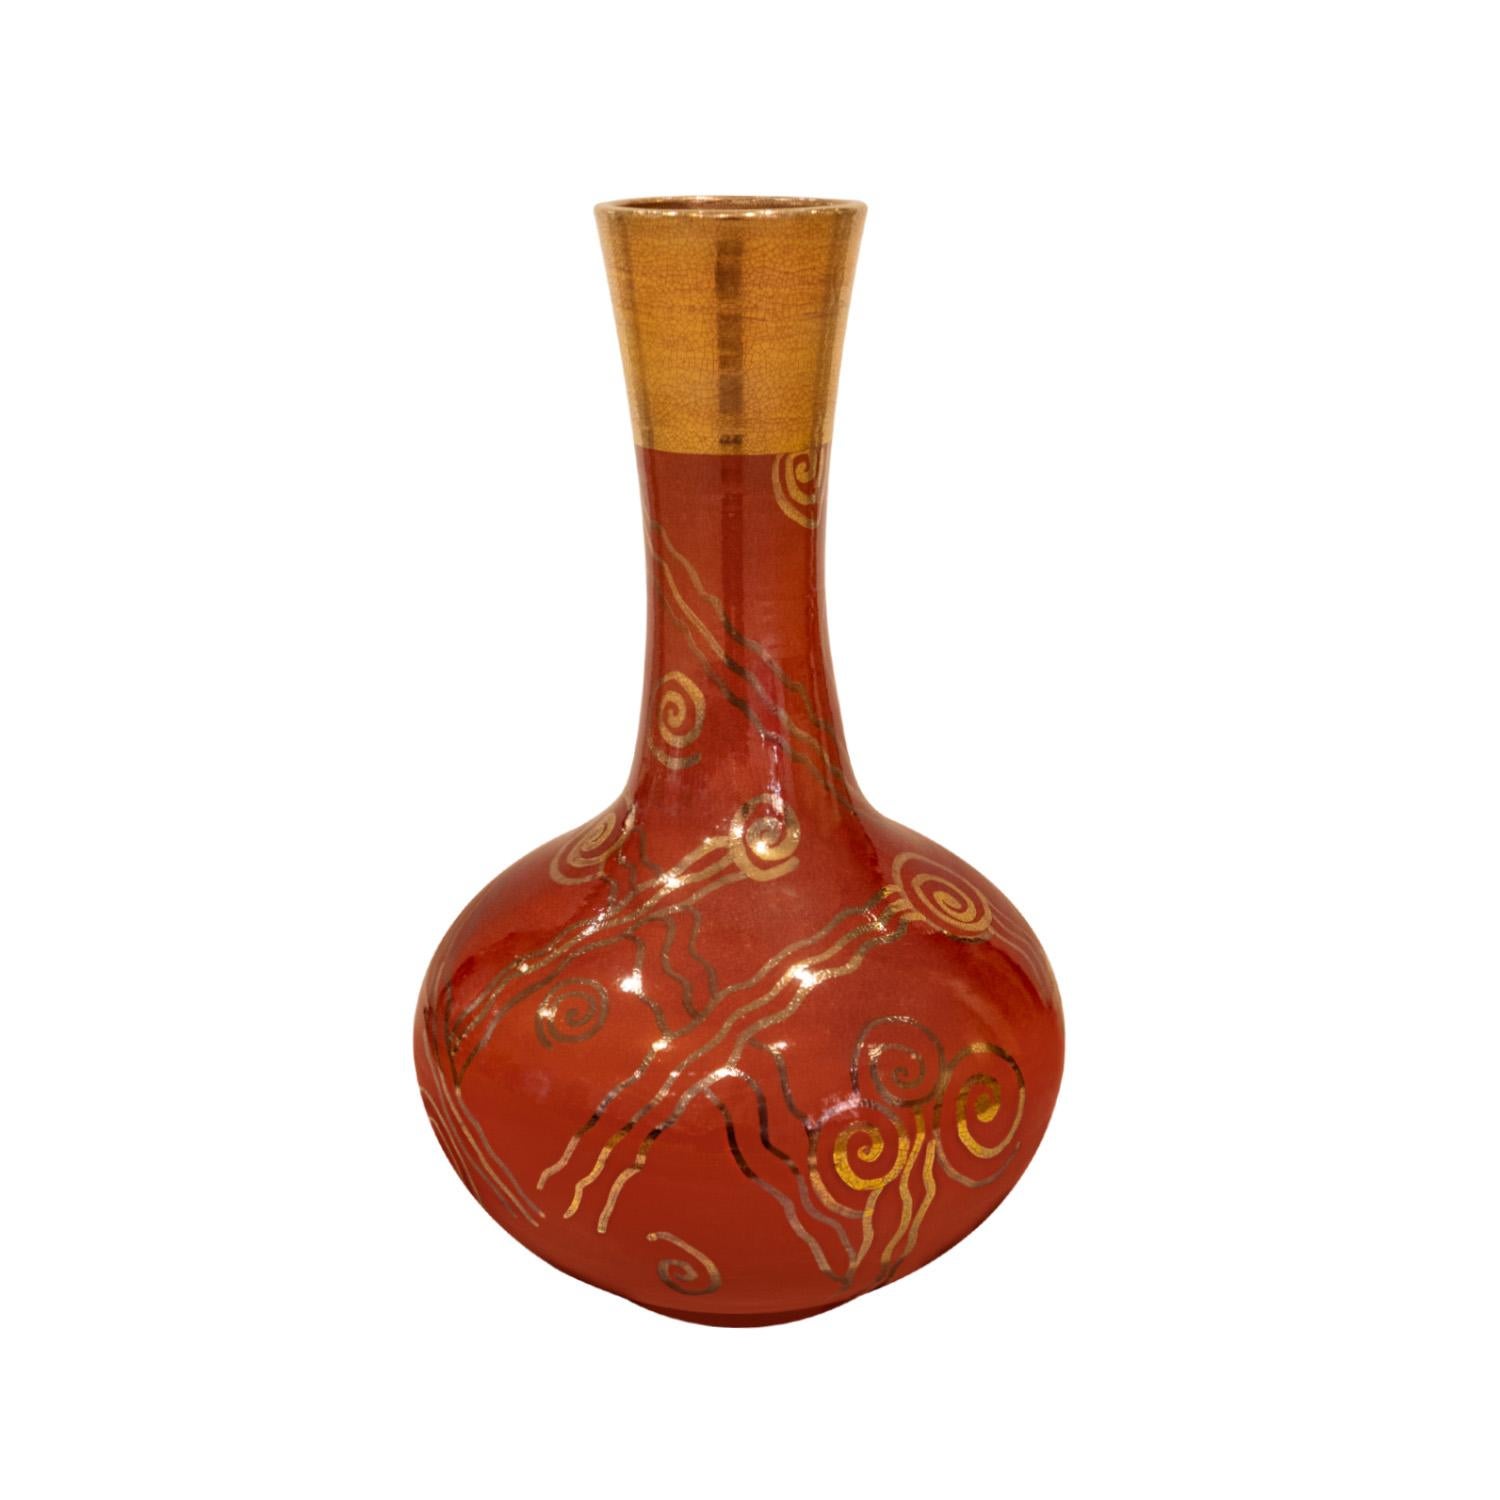 Handgedrehte Keramikvase in chinesischer roter Glasur mit aufgelegtem Golddekor von Gary McCloy, Amerikaner, 1970er Jahre (signiert auf dem Boden). Diese Vase ist beeindruckend und hat eine große optische Tiefe. Die Kombination aus chinesischem Rot